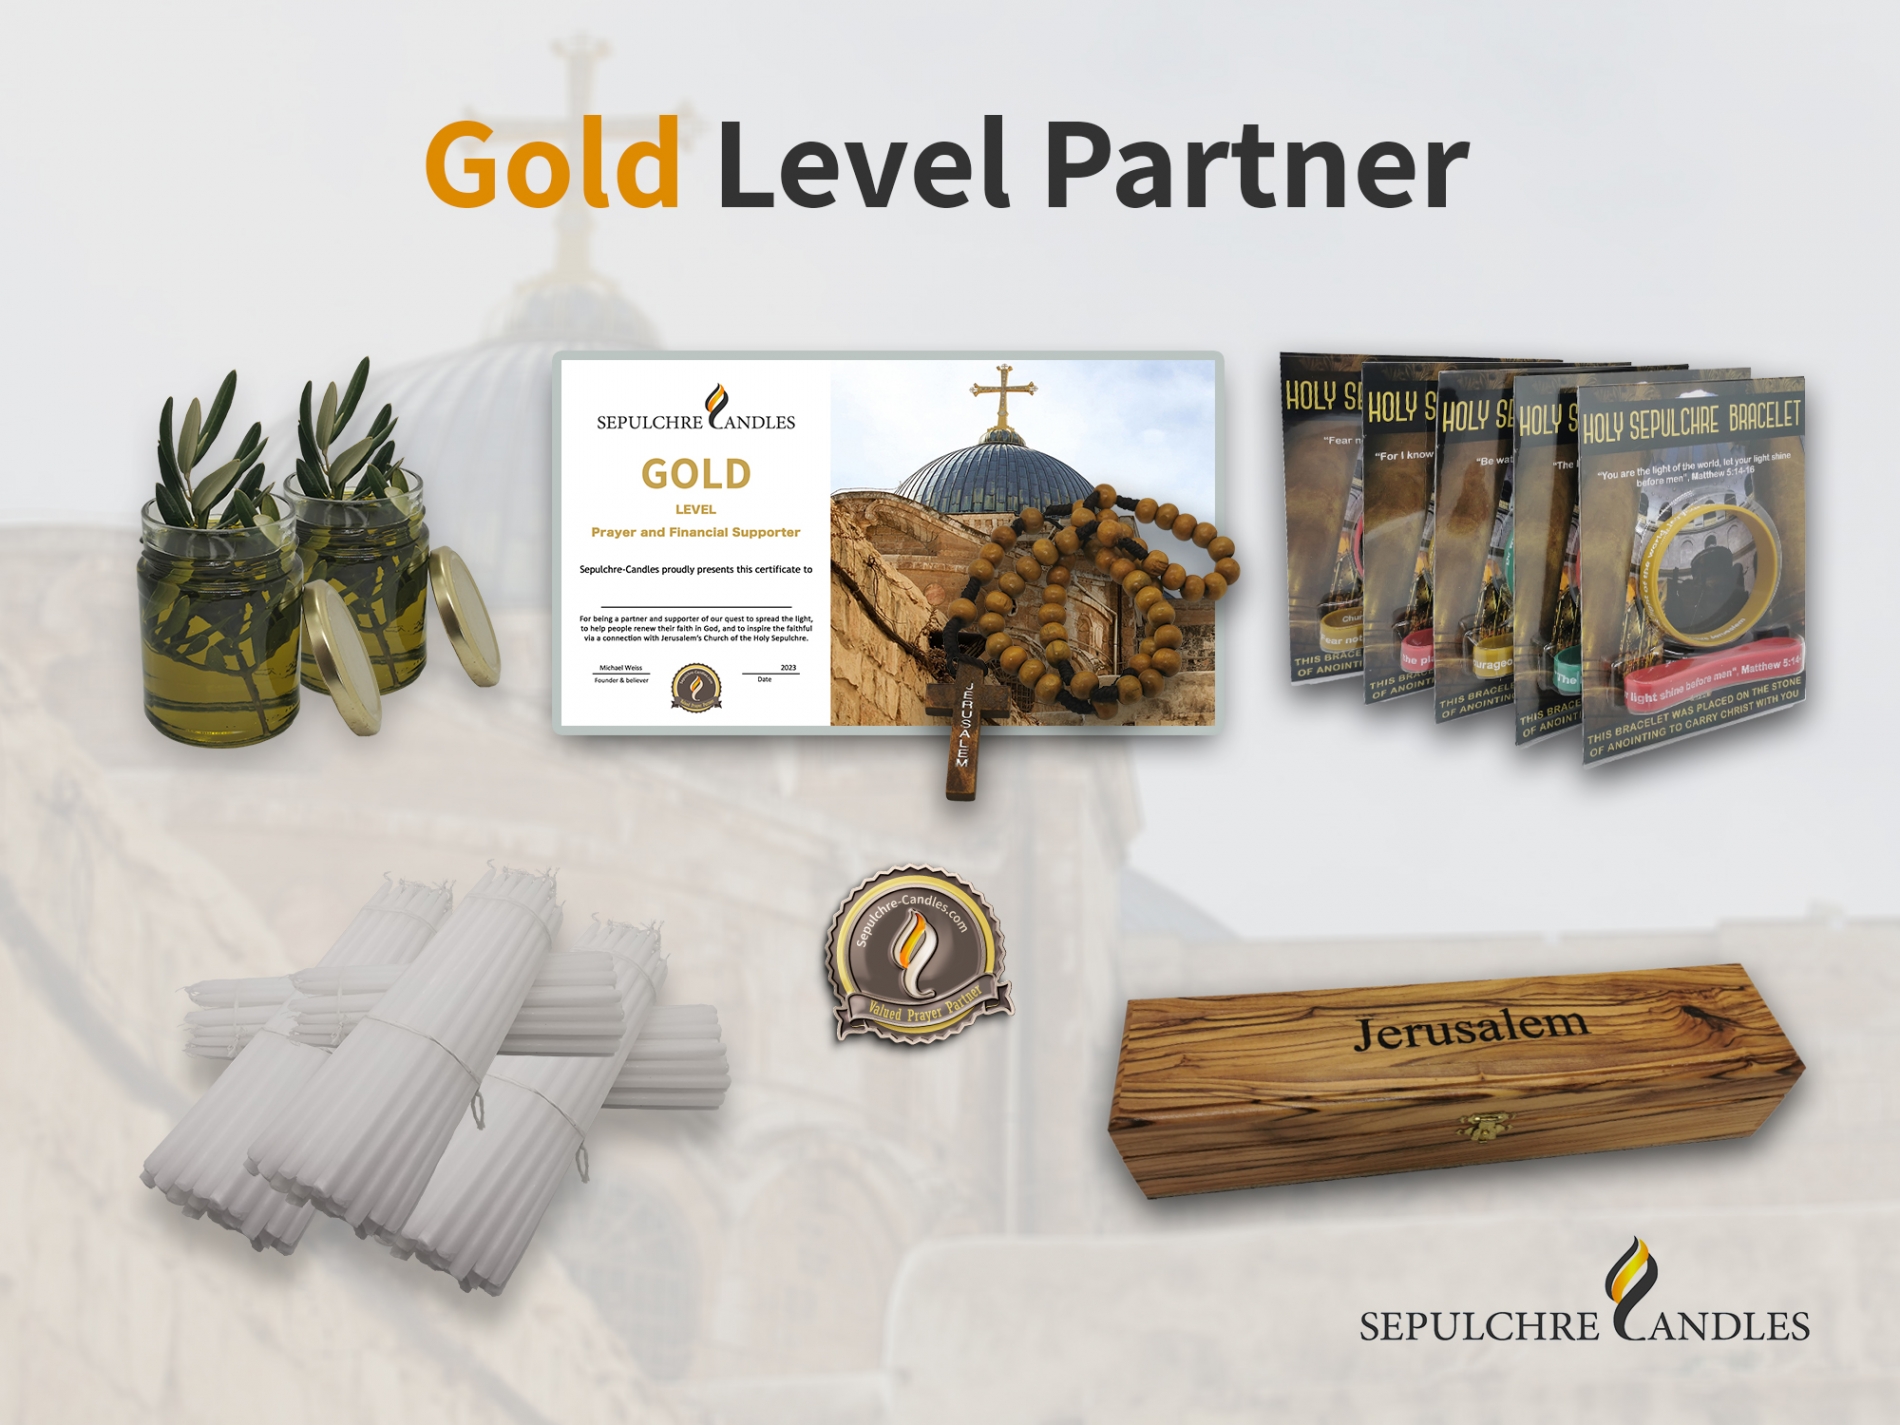 Gold Level Partner